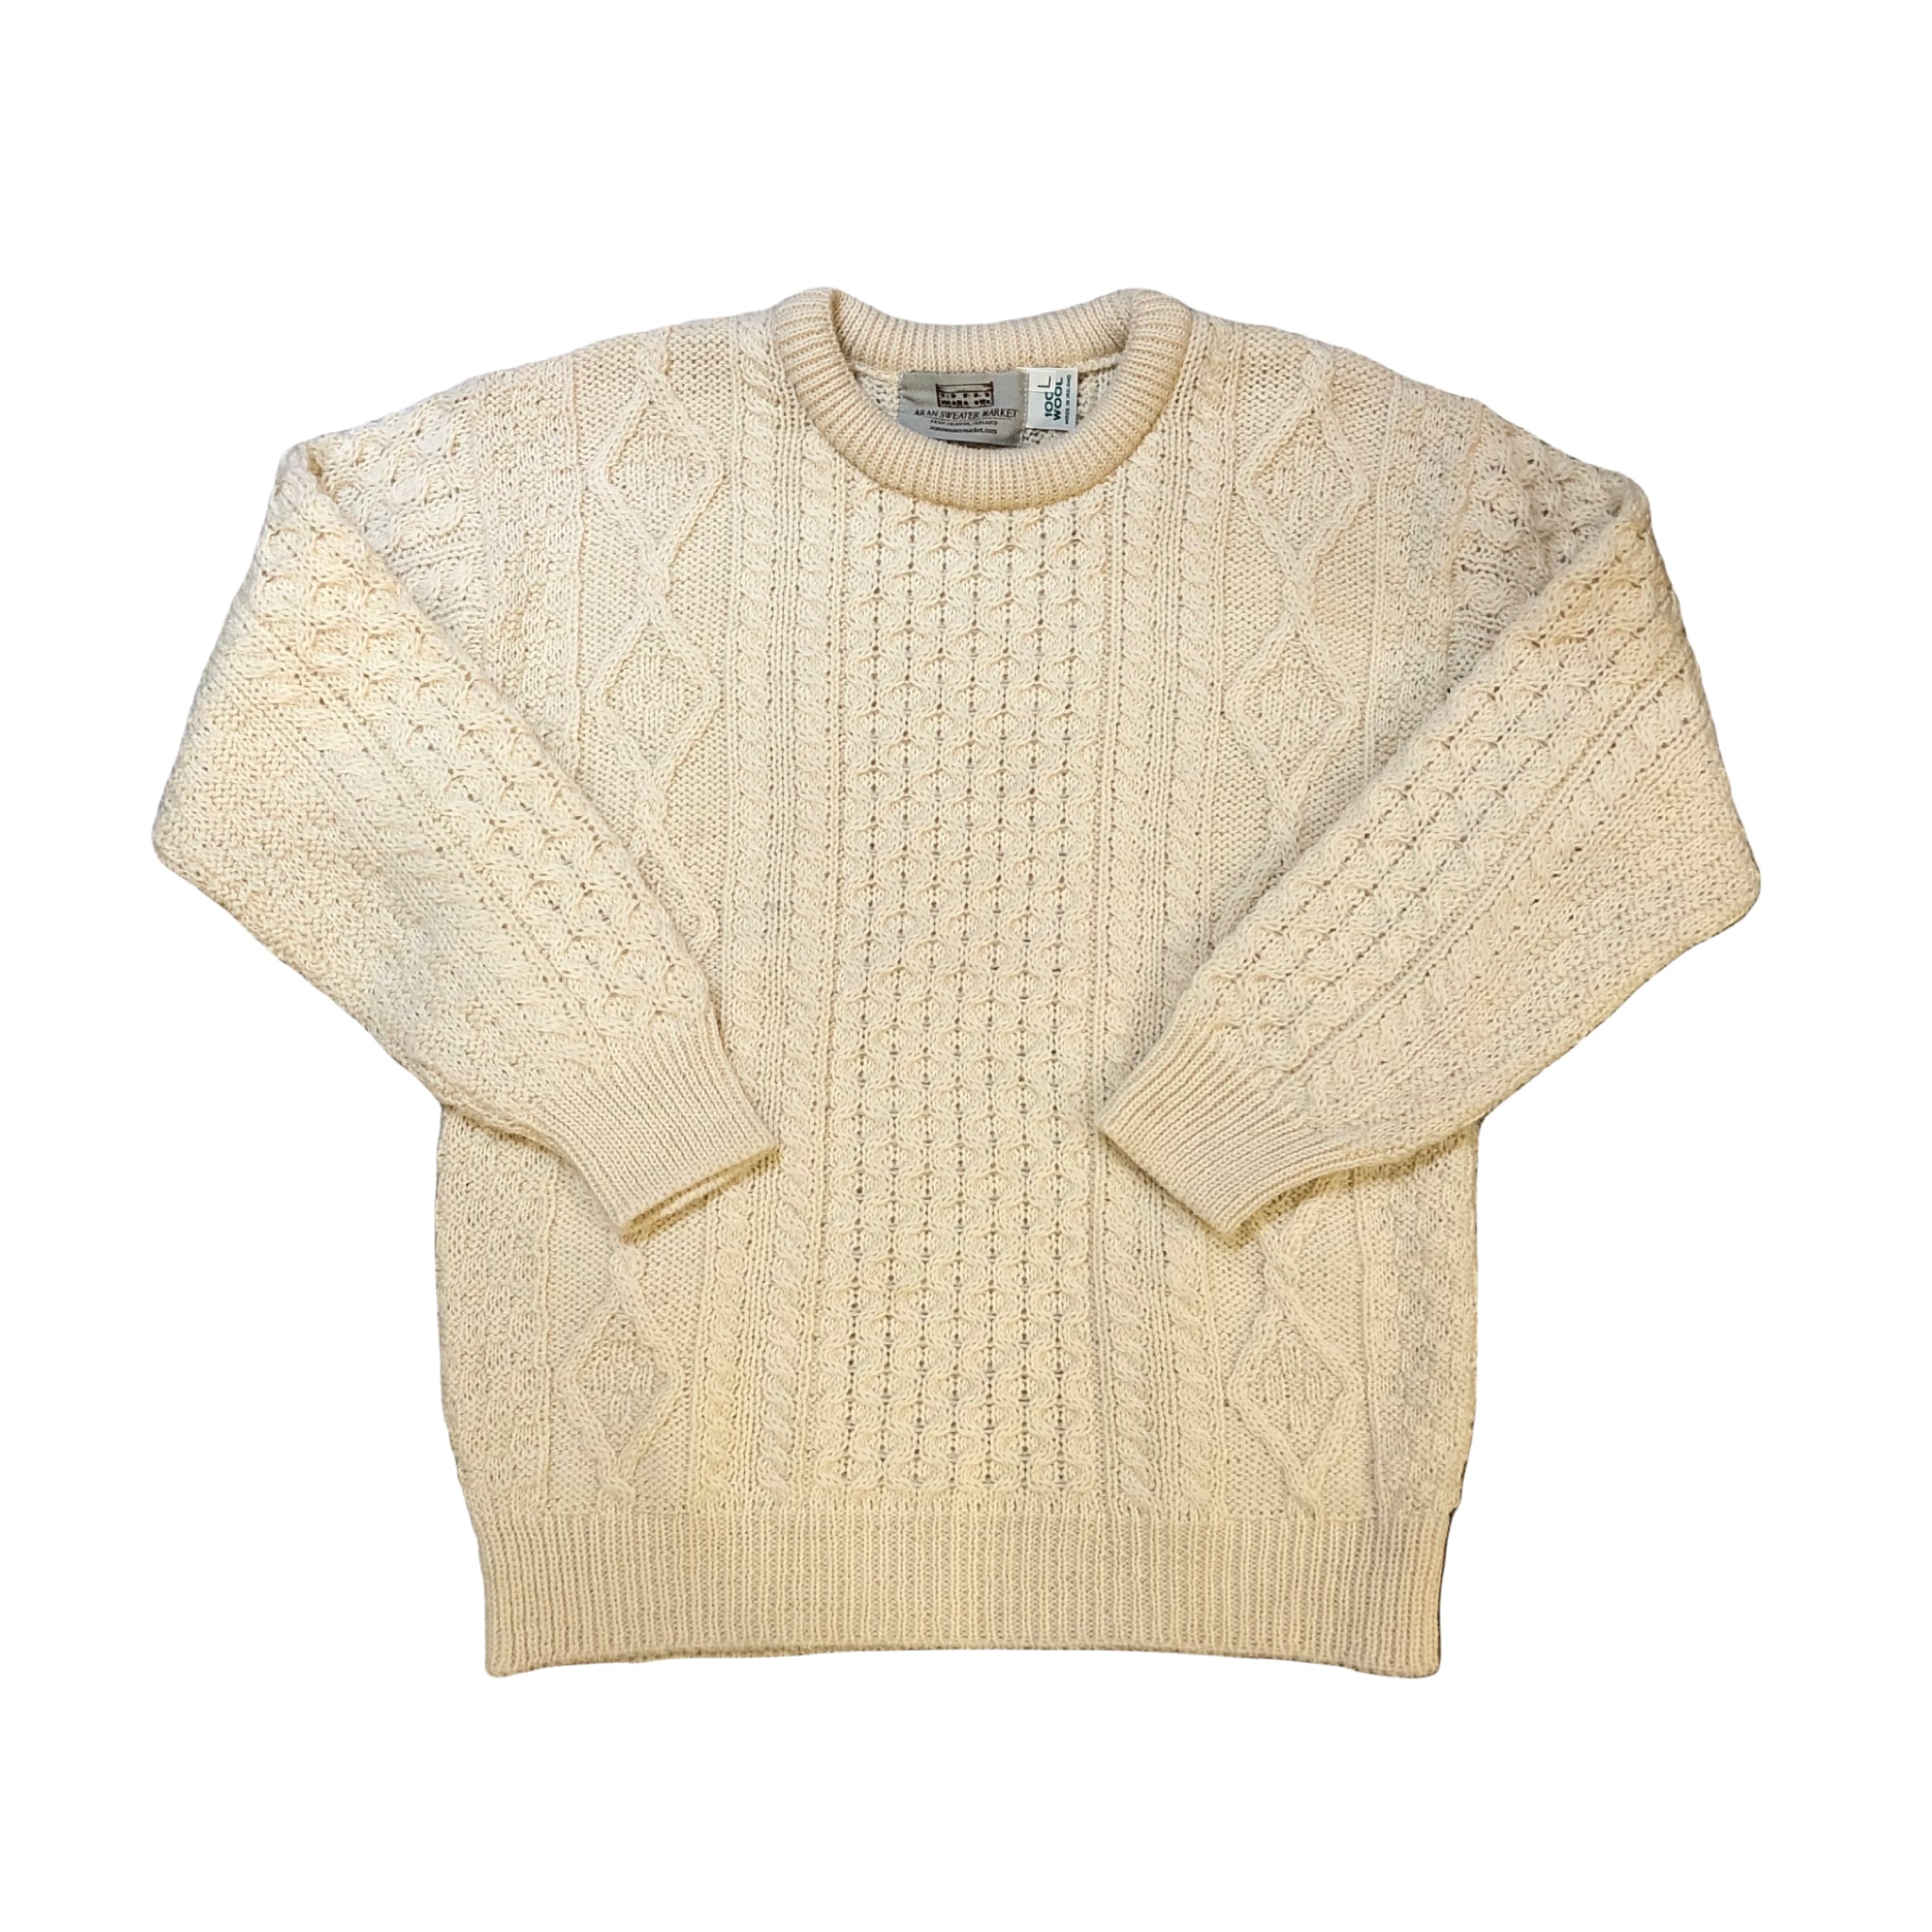 Aran Sweater Market Sweater ¥7,800+tax | BLUE VALENTINE